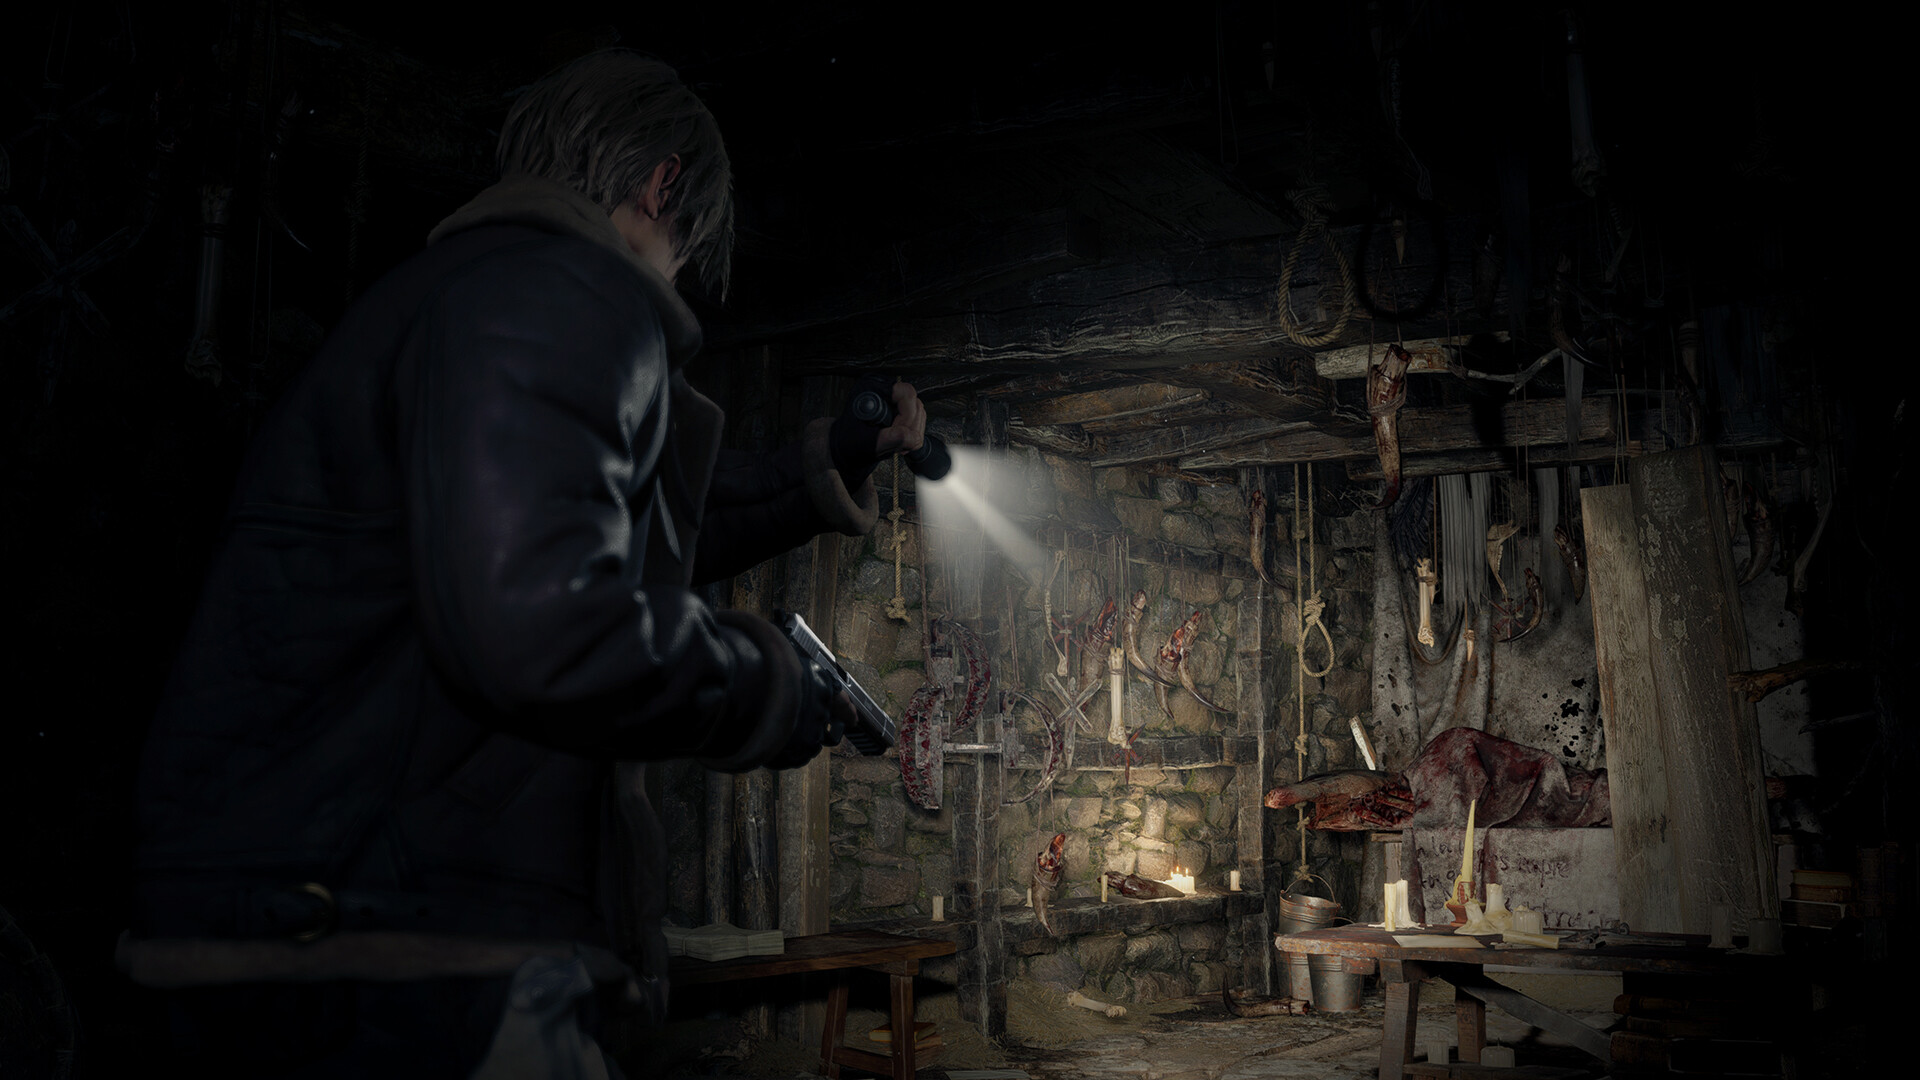 Resident Evil 4 (2023) NA Steam CD Key